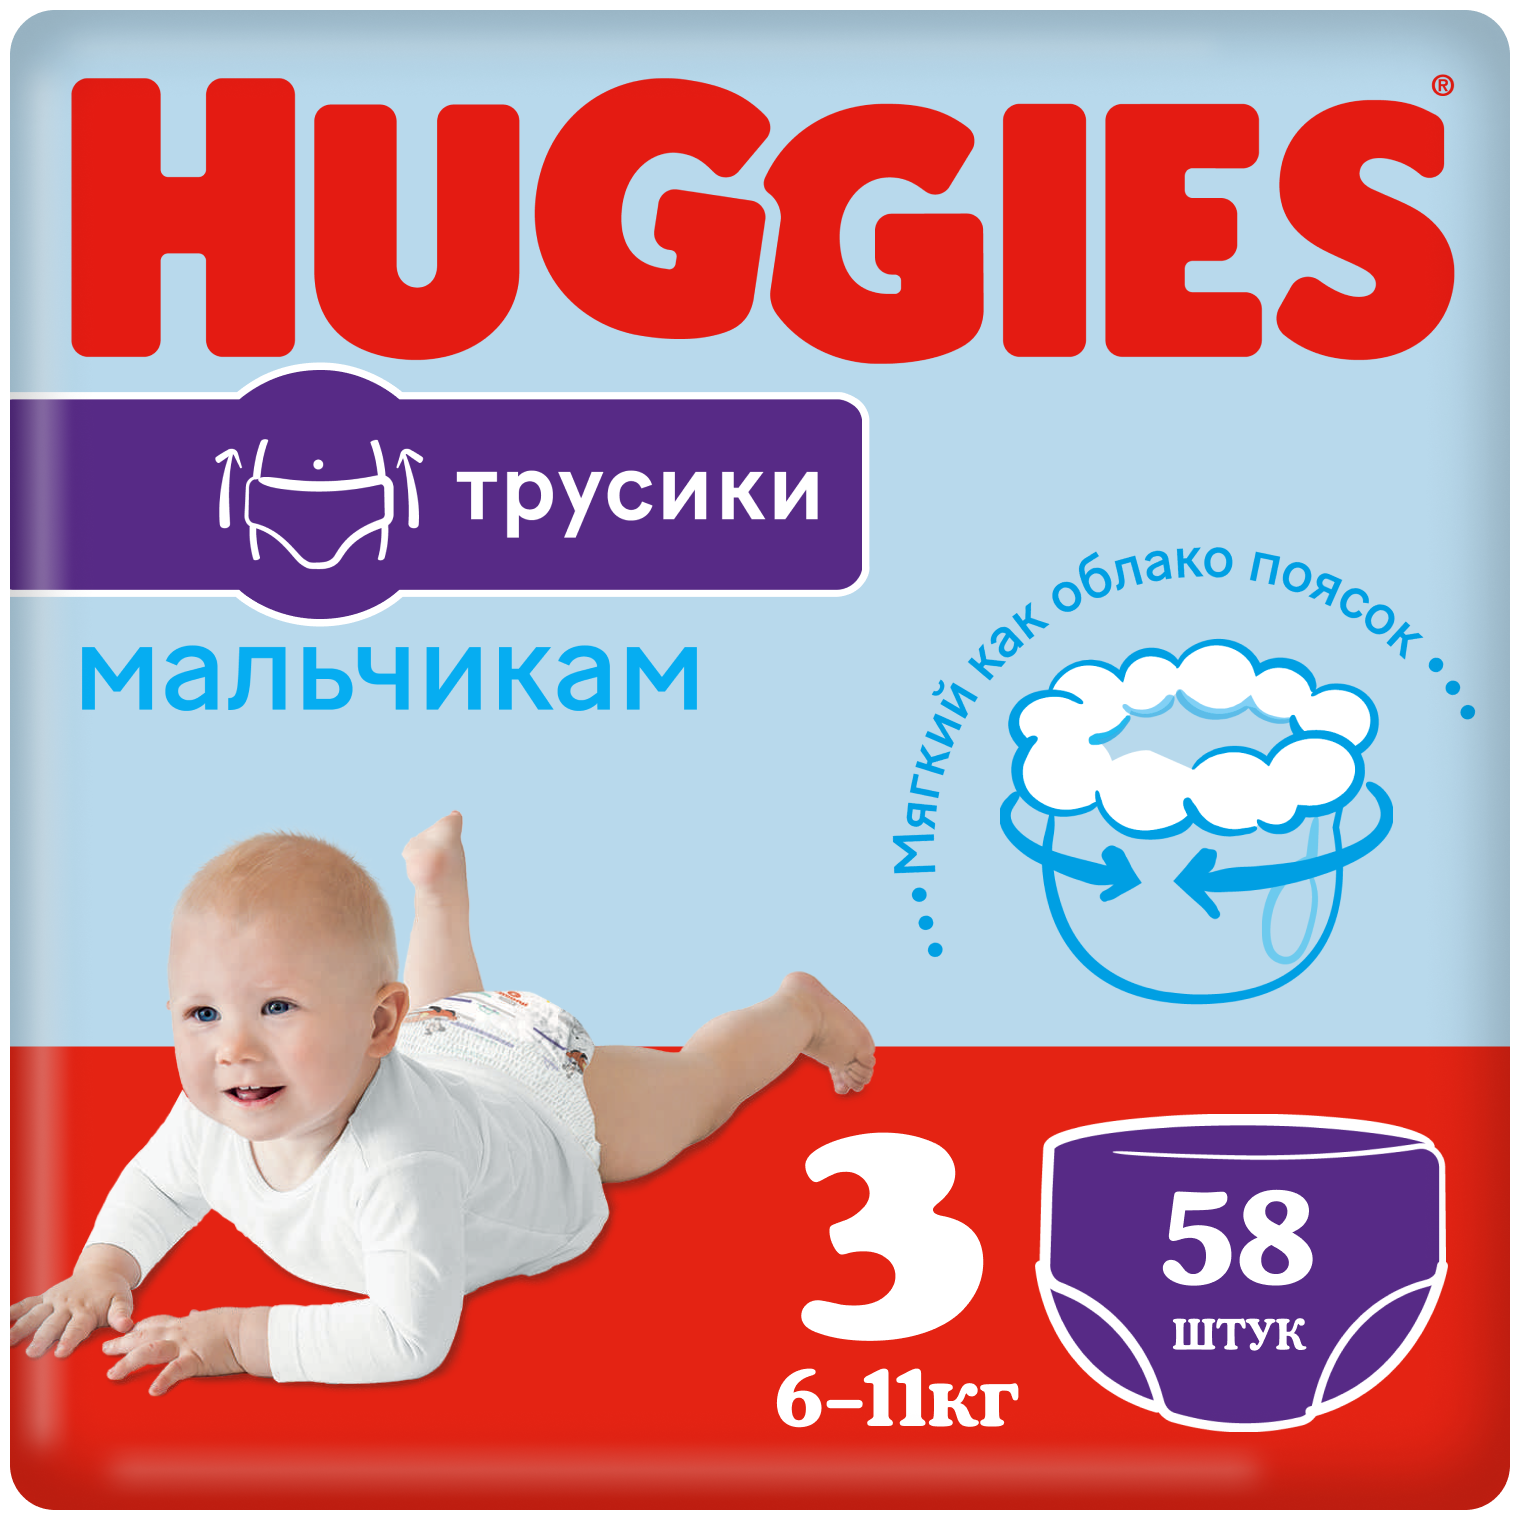 Huggies трусики для мальчиков 3, 6-11 кг, 58 шт.